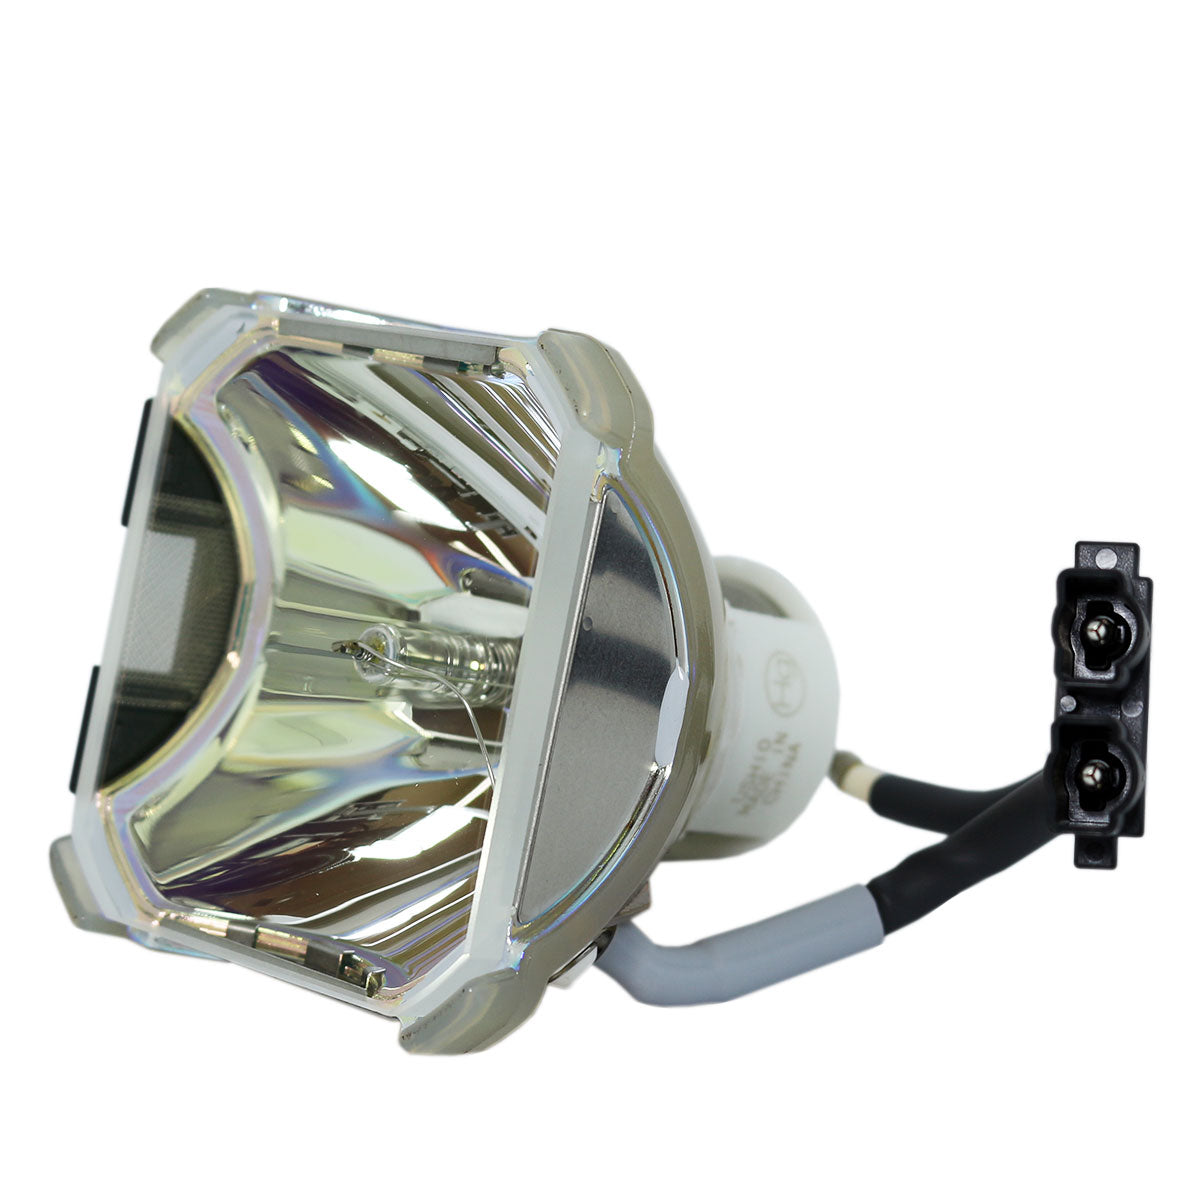 3M 78-6969-9547-7 Ushio Projector Bare Lamp